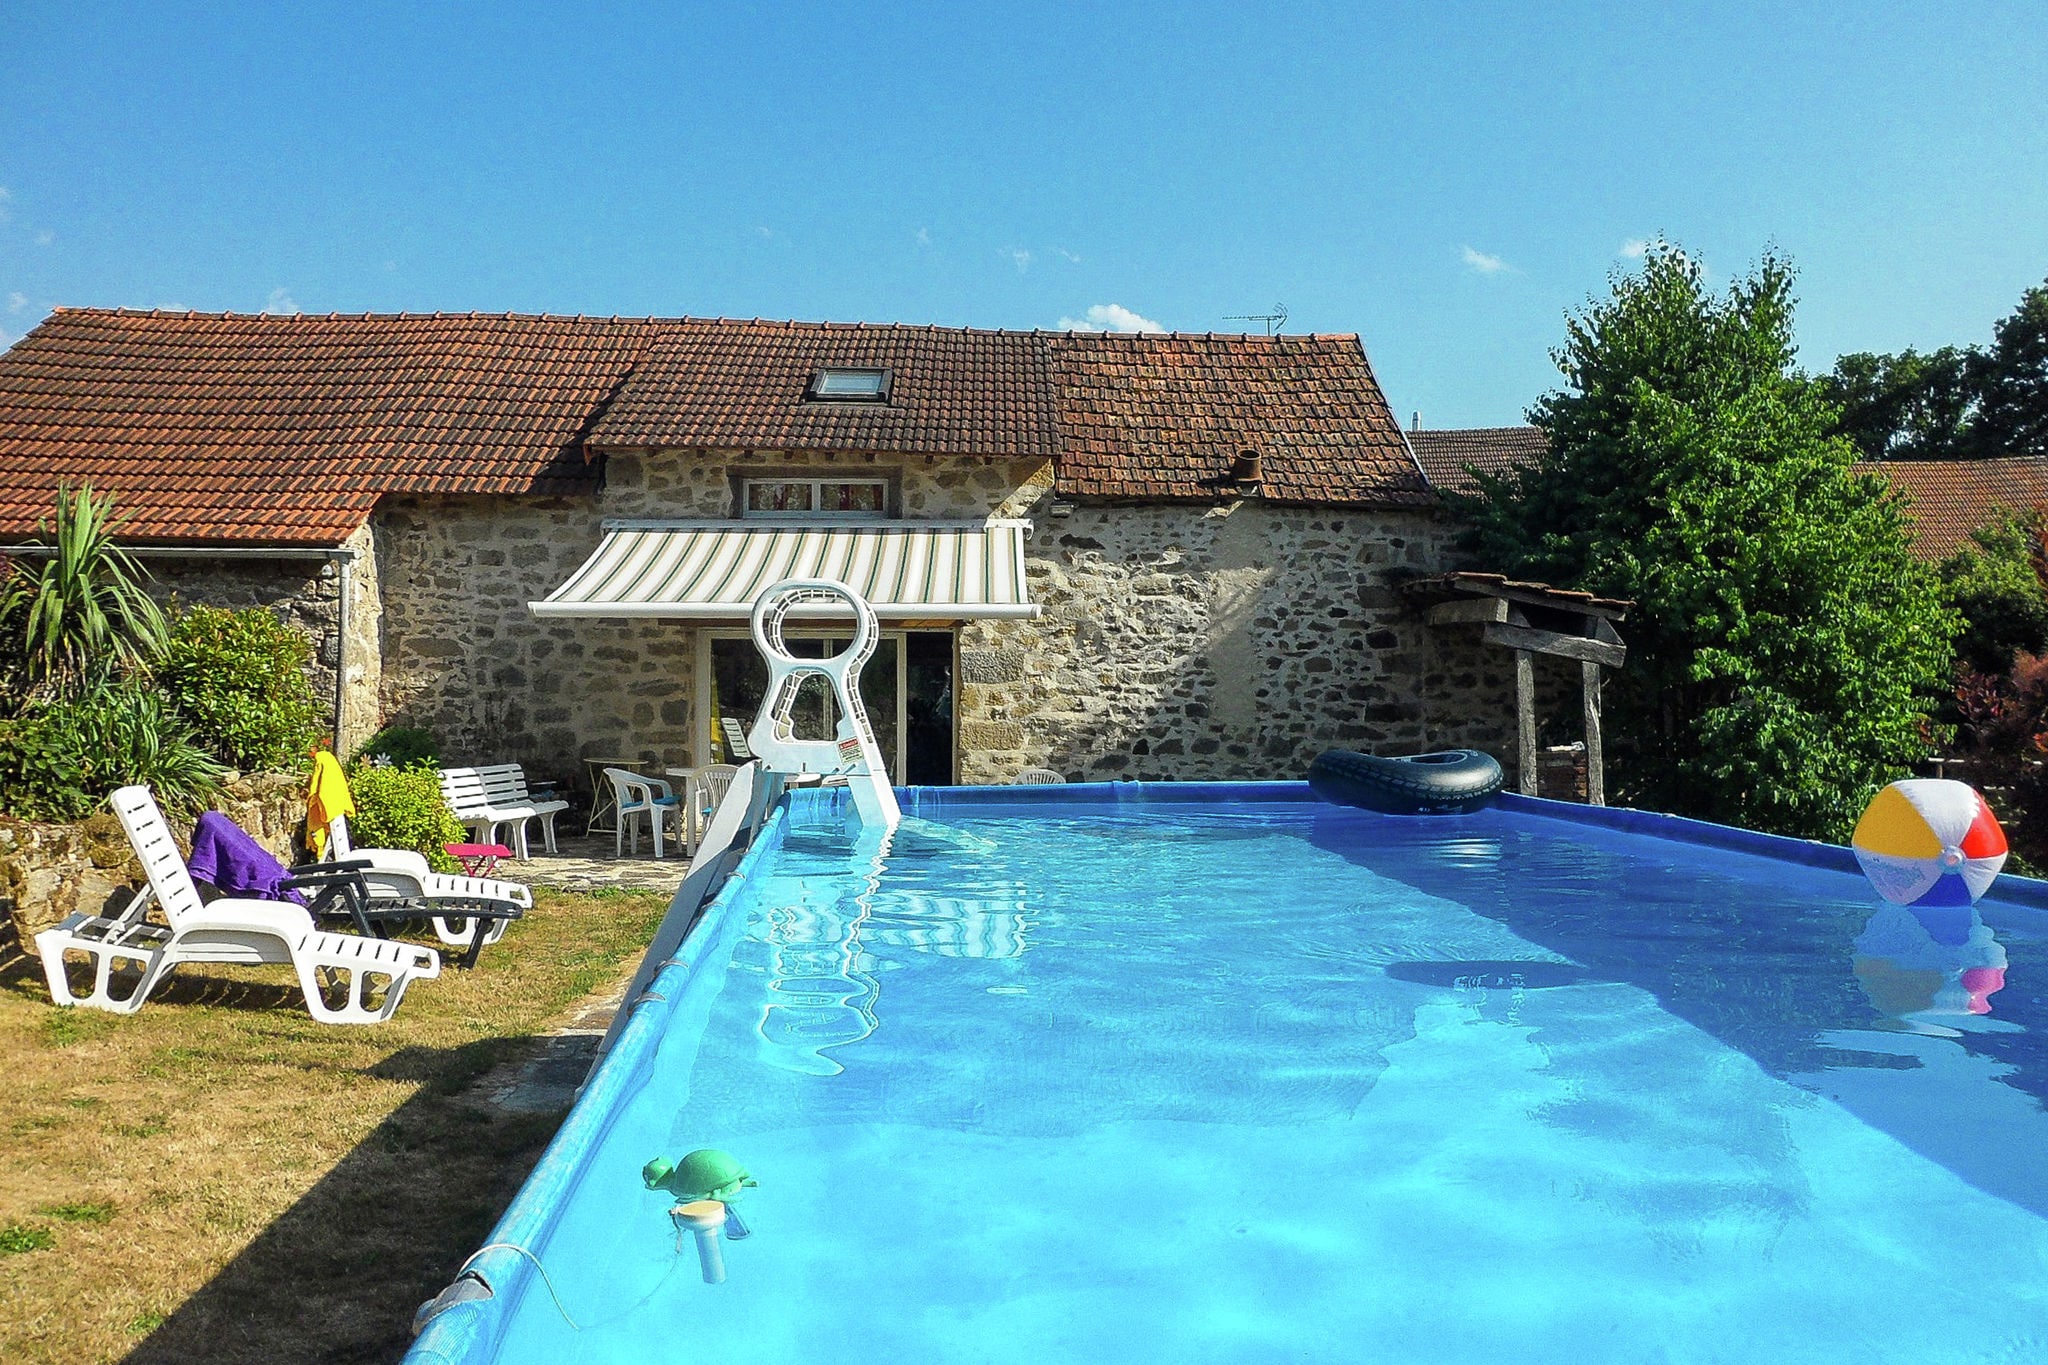 Gezellig vakantiehuis in rustige straat met privézwembad in midden van Frankrijk